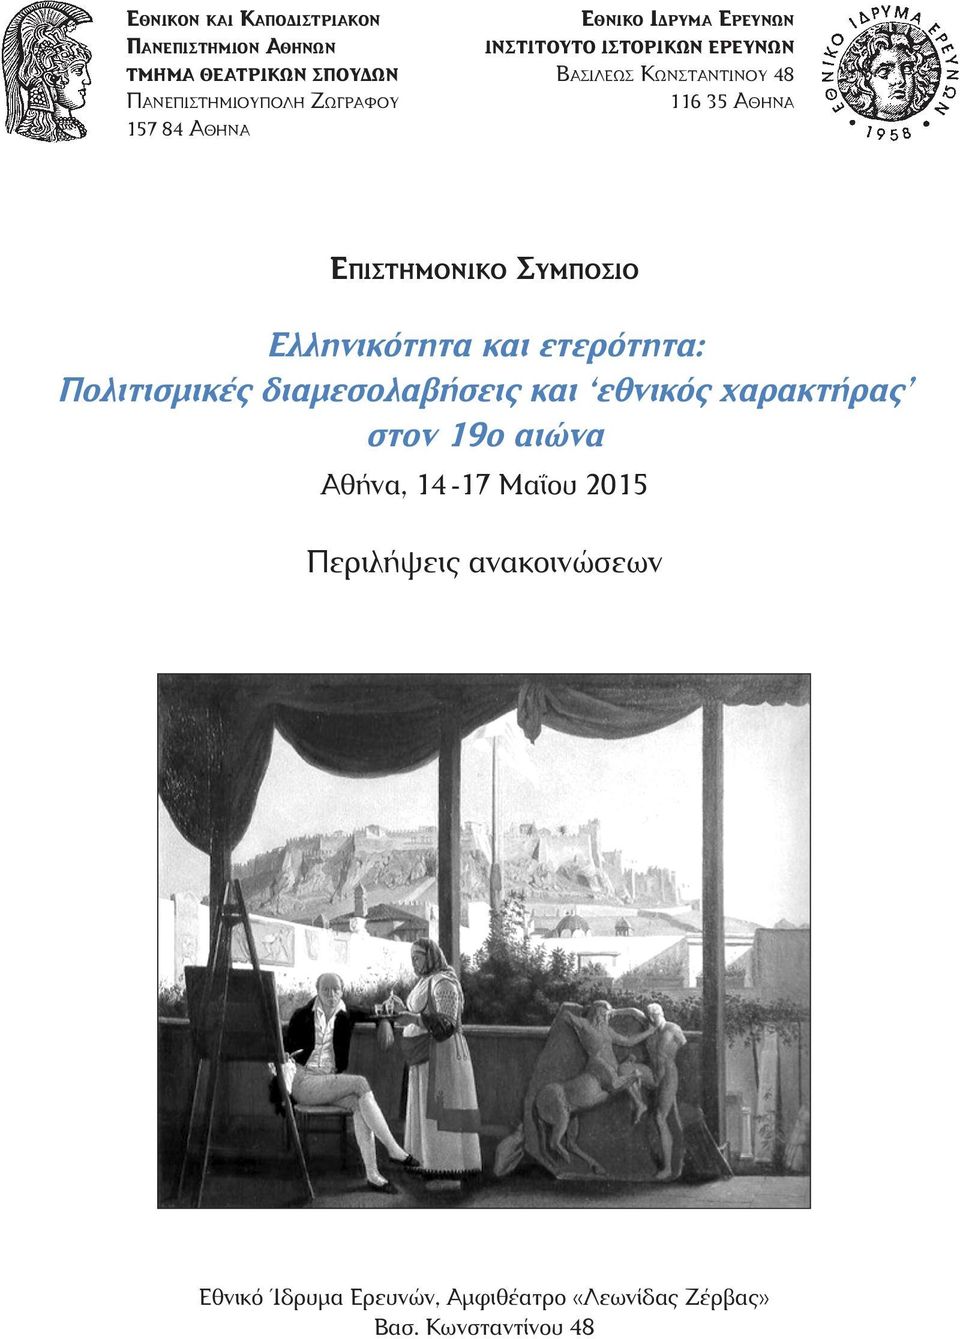 Συμπόσιο Ελληνικότητα και ετερότητα: Πολιτισμικές διαμεσολαβήσεις και εθνικός χαρακτήρας στον 19ο αιώνα